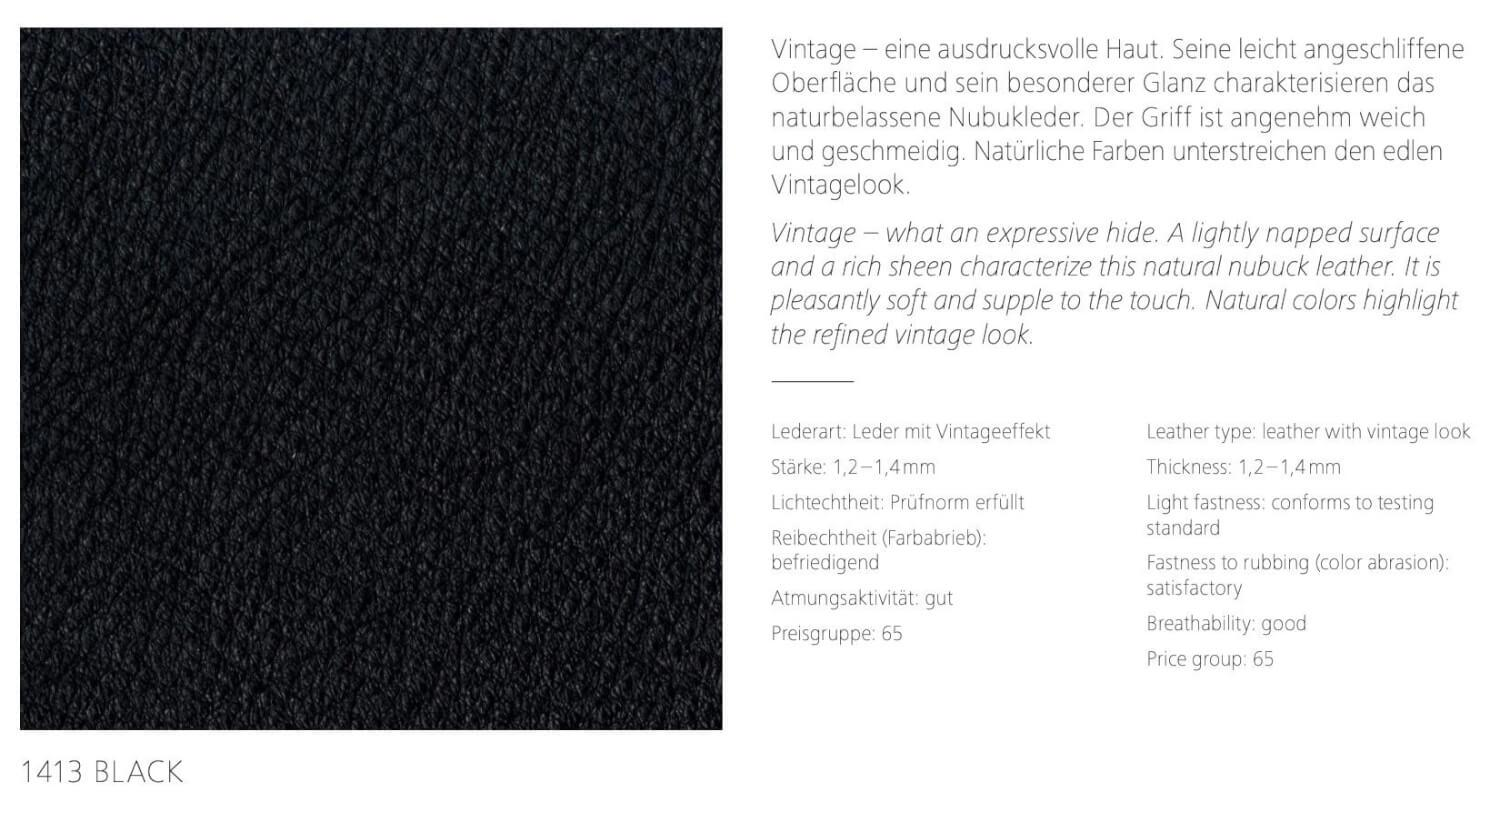 Sessel Berlin Chair Leder Vintage 1413 Black Profistahl Verchromt